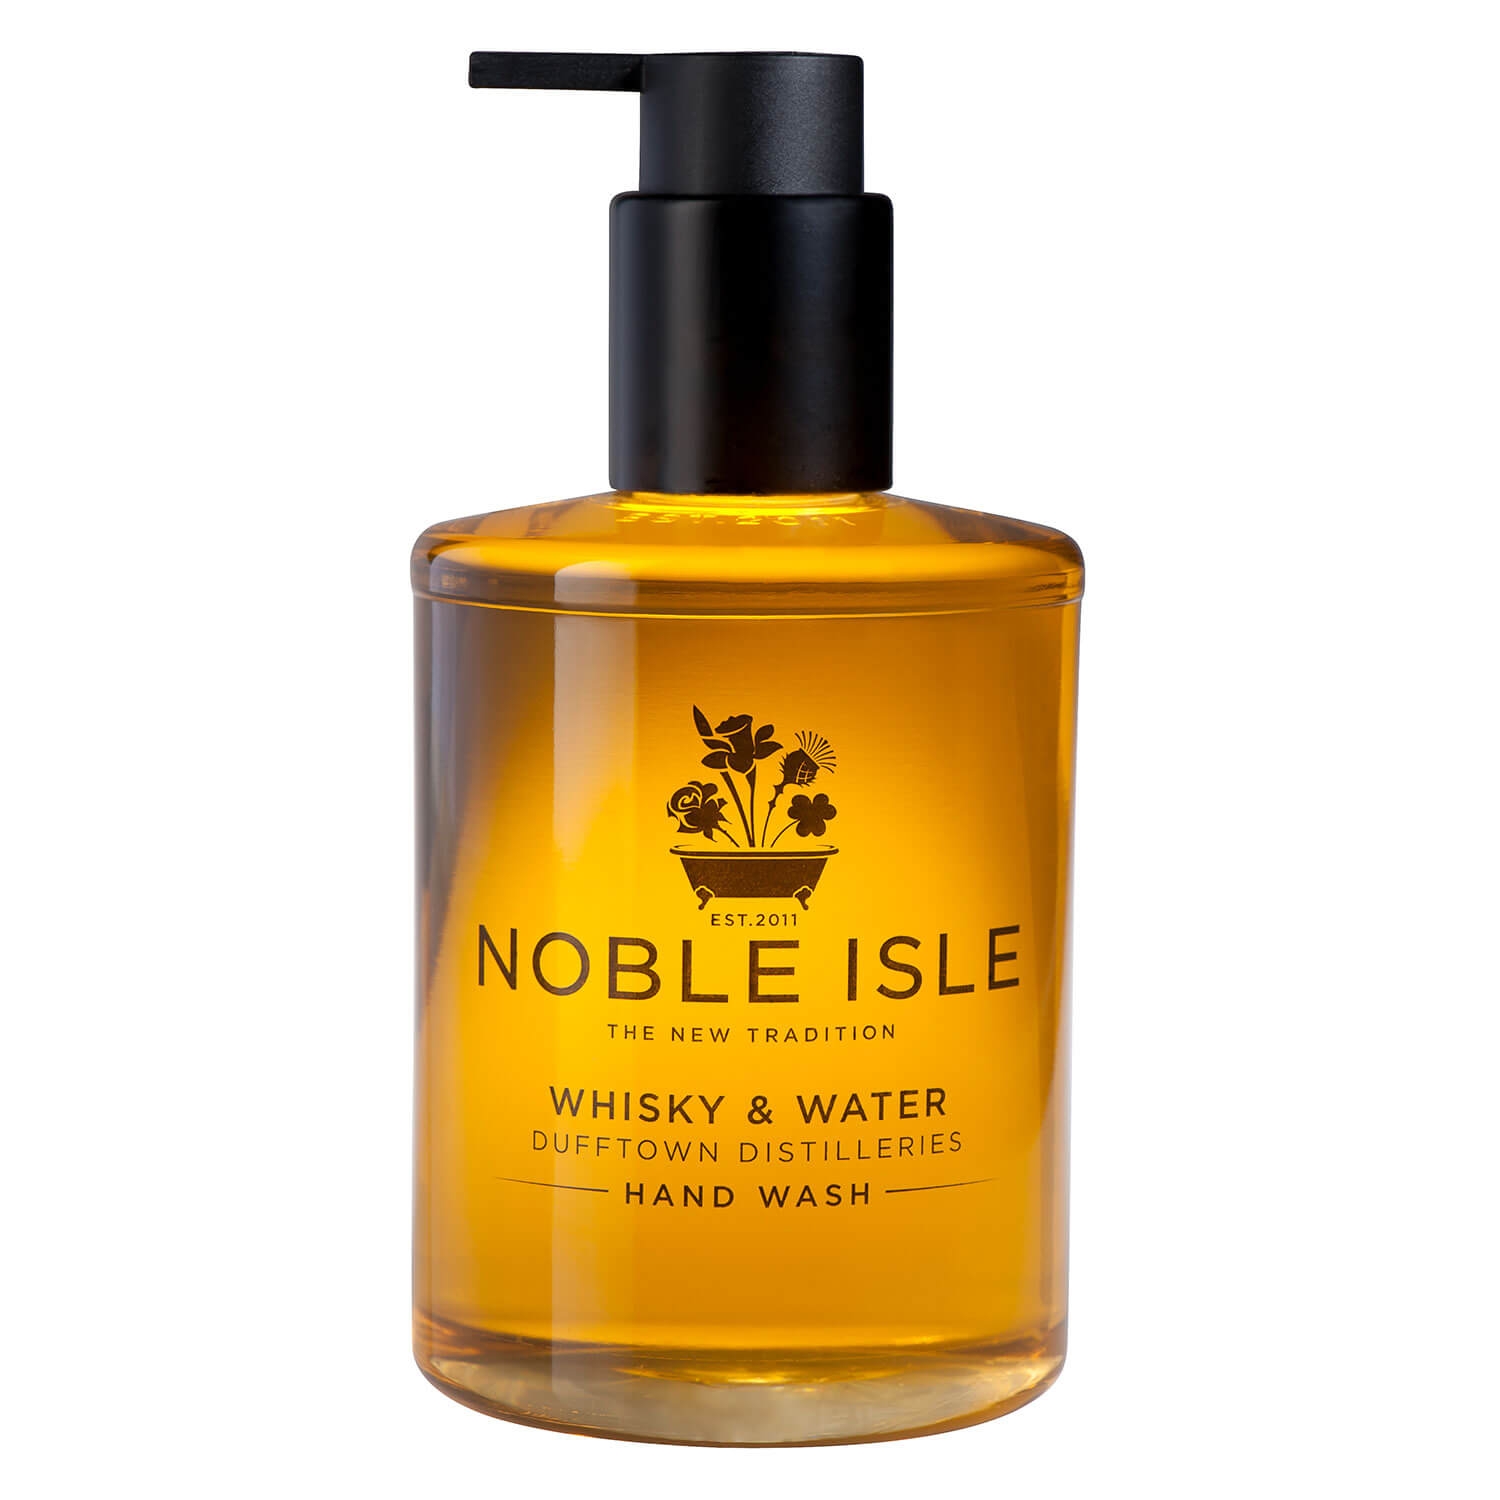 Produktbild von Noble Isle - Whisky & Water Hand Wash